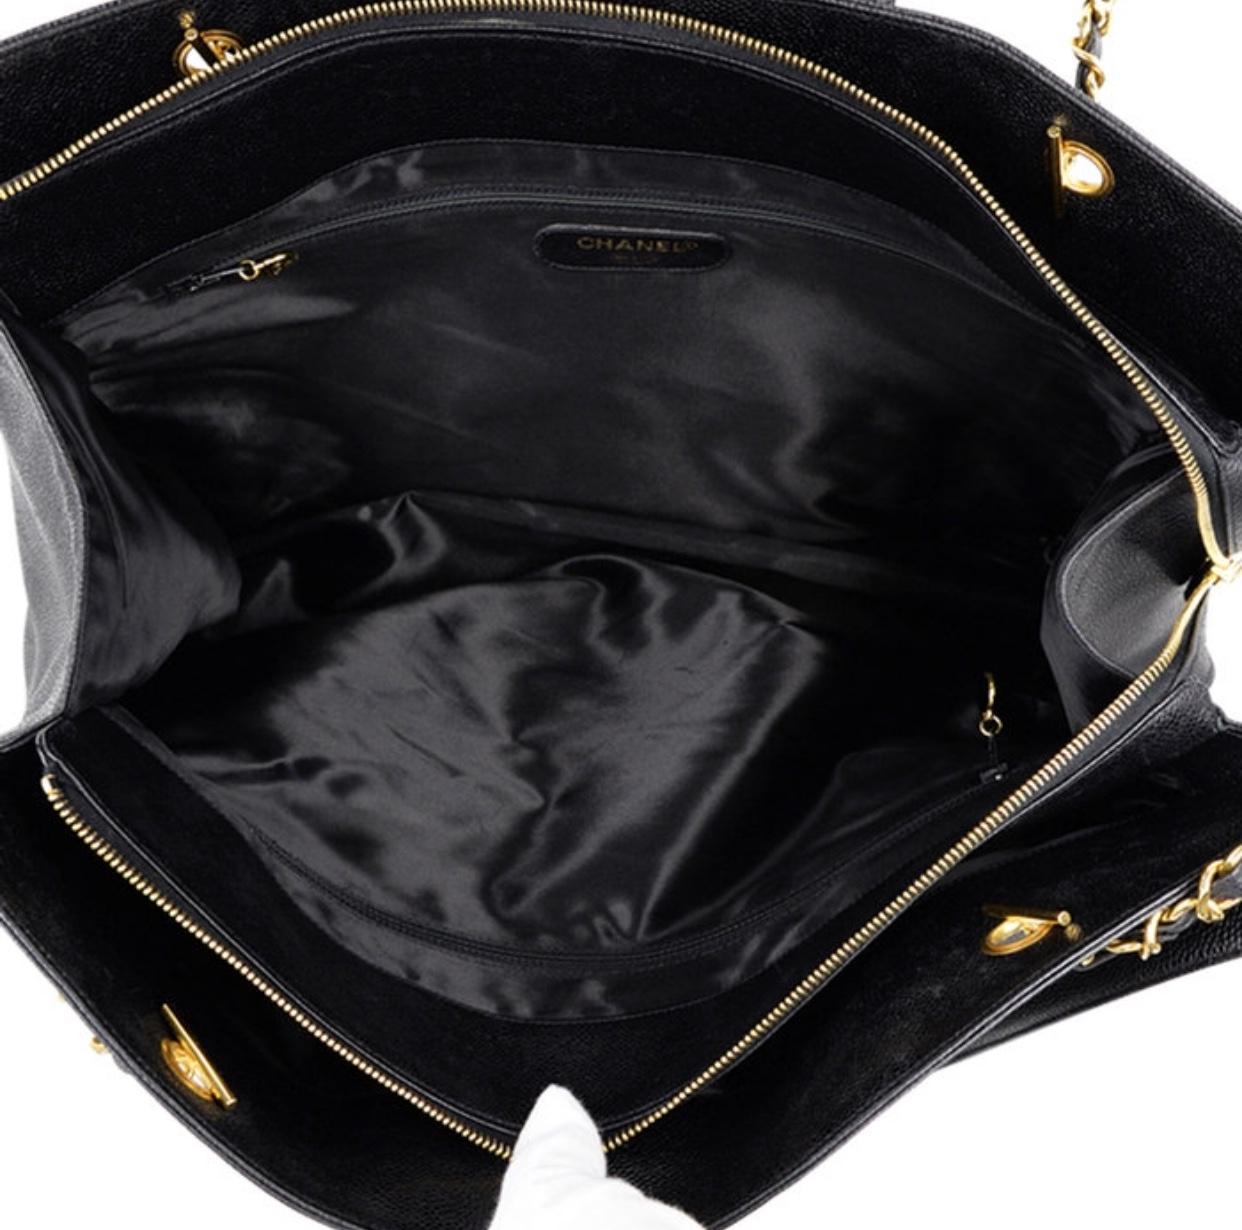 Vintage CHANEL black caviar leather Overnighter, Weekender bag, large chain bag. 1